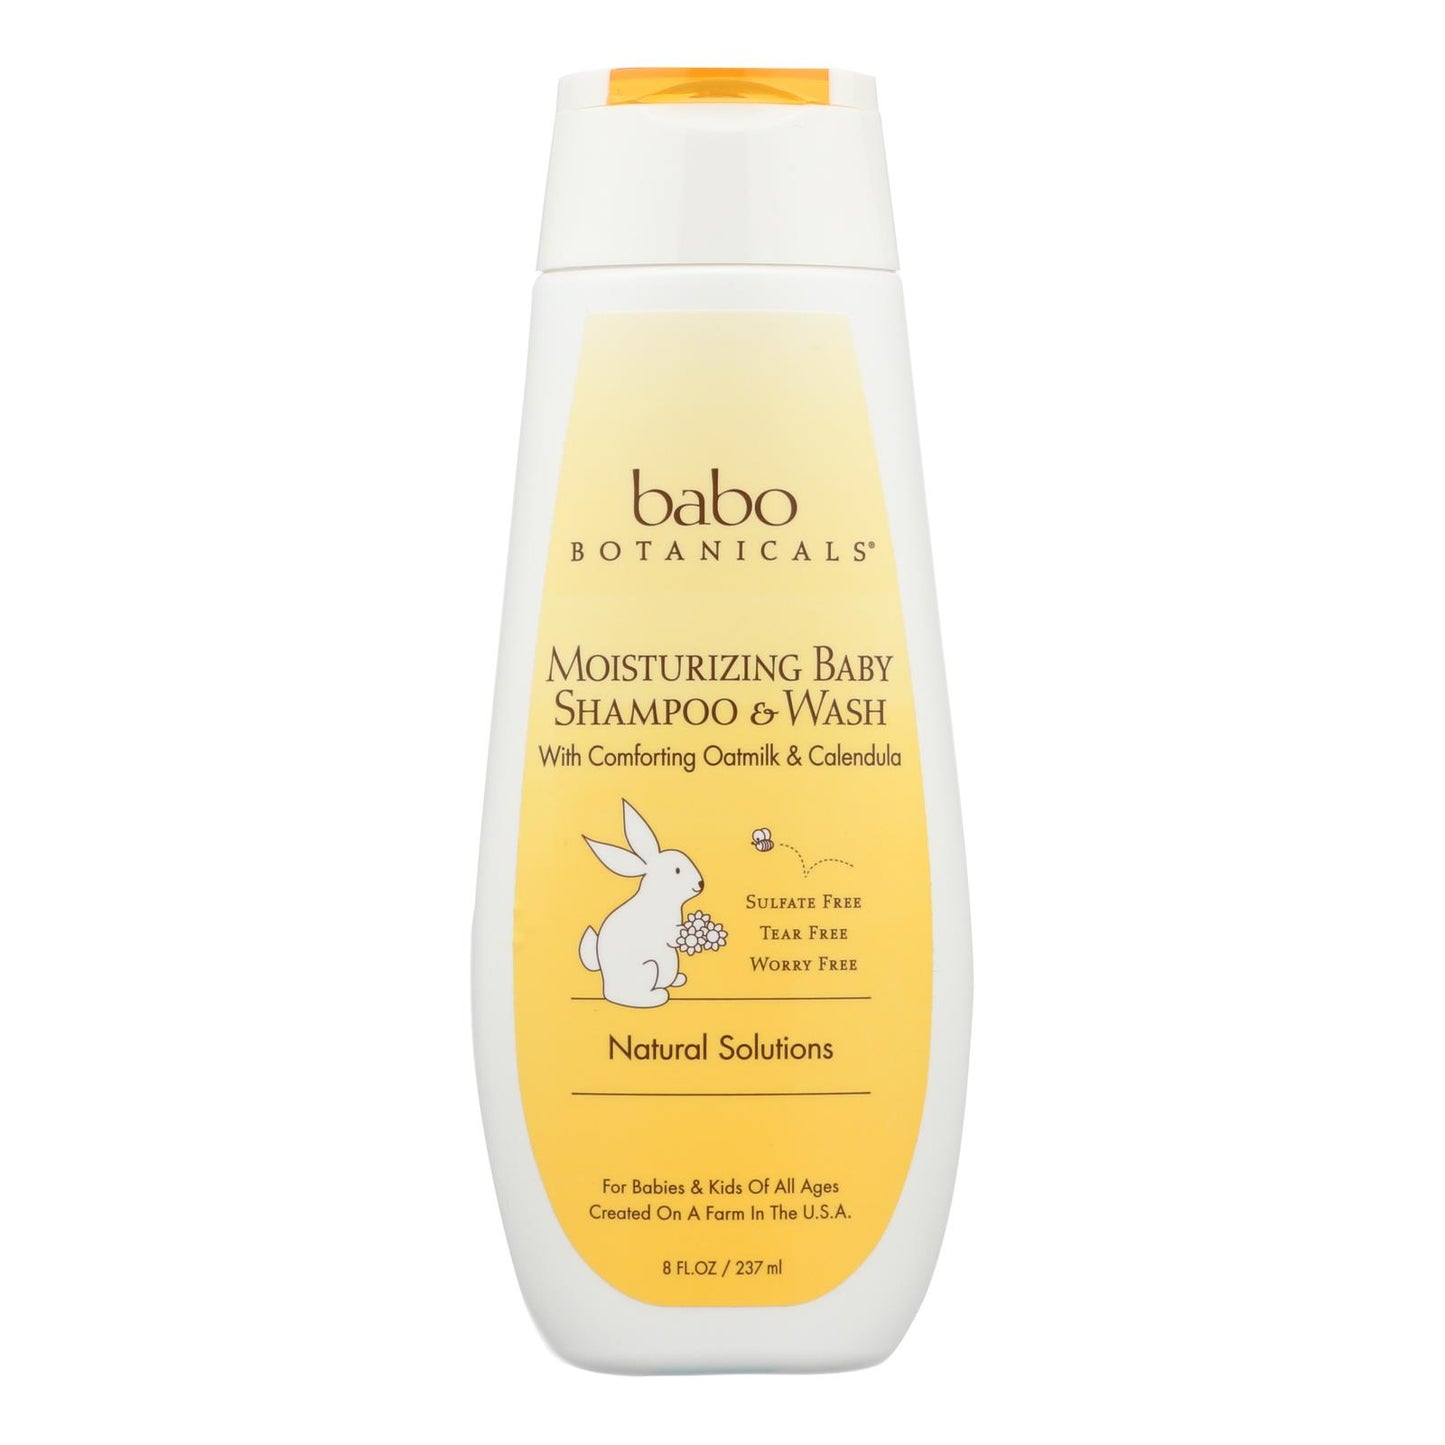 Babo Botanicals - Moisturizing Baby Shampoo And Wash - Oatmilk Calendula - 8 Fl Oz